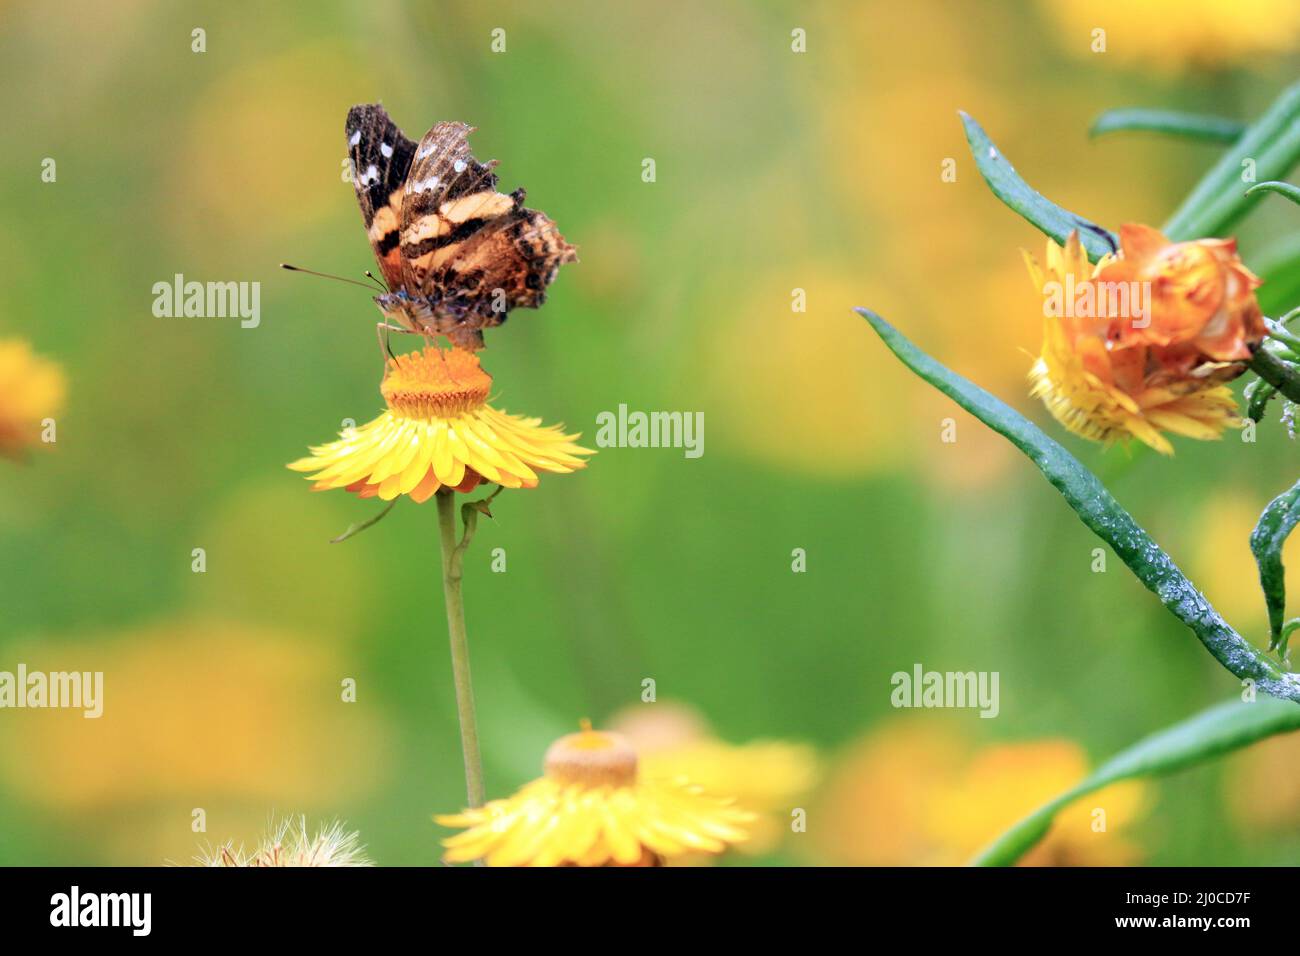 En un gran jardín salvaje, lleno de vibrantes plantas verdes, se alza una mariposa de ala de mapa. Alimentando, distribuyendo polen y descansando de sus vuelos. Foto de stock